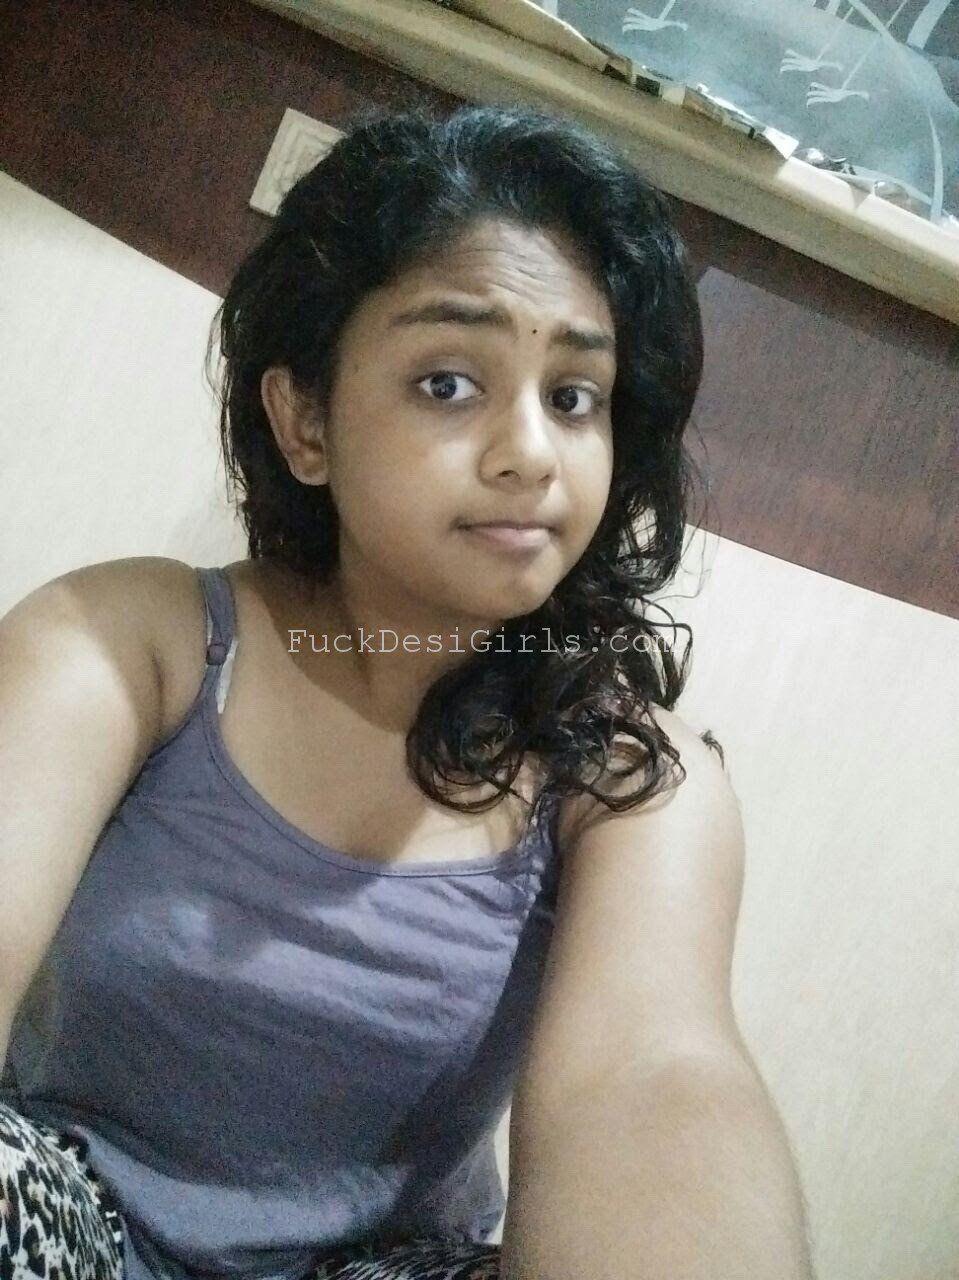 Tamilnadu girls nude photos